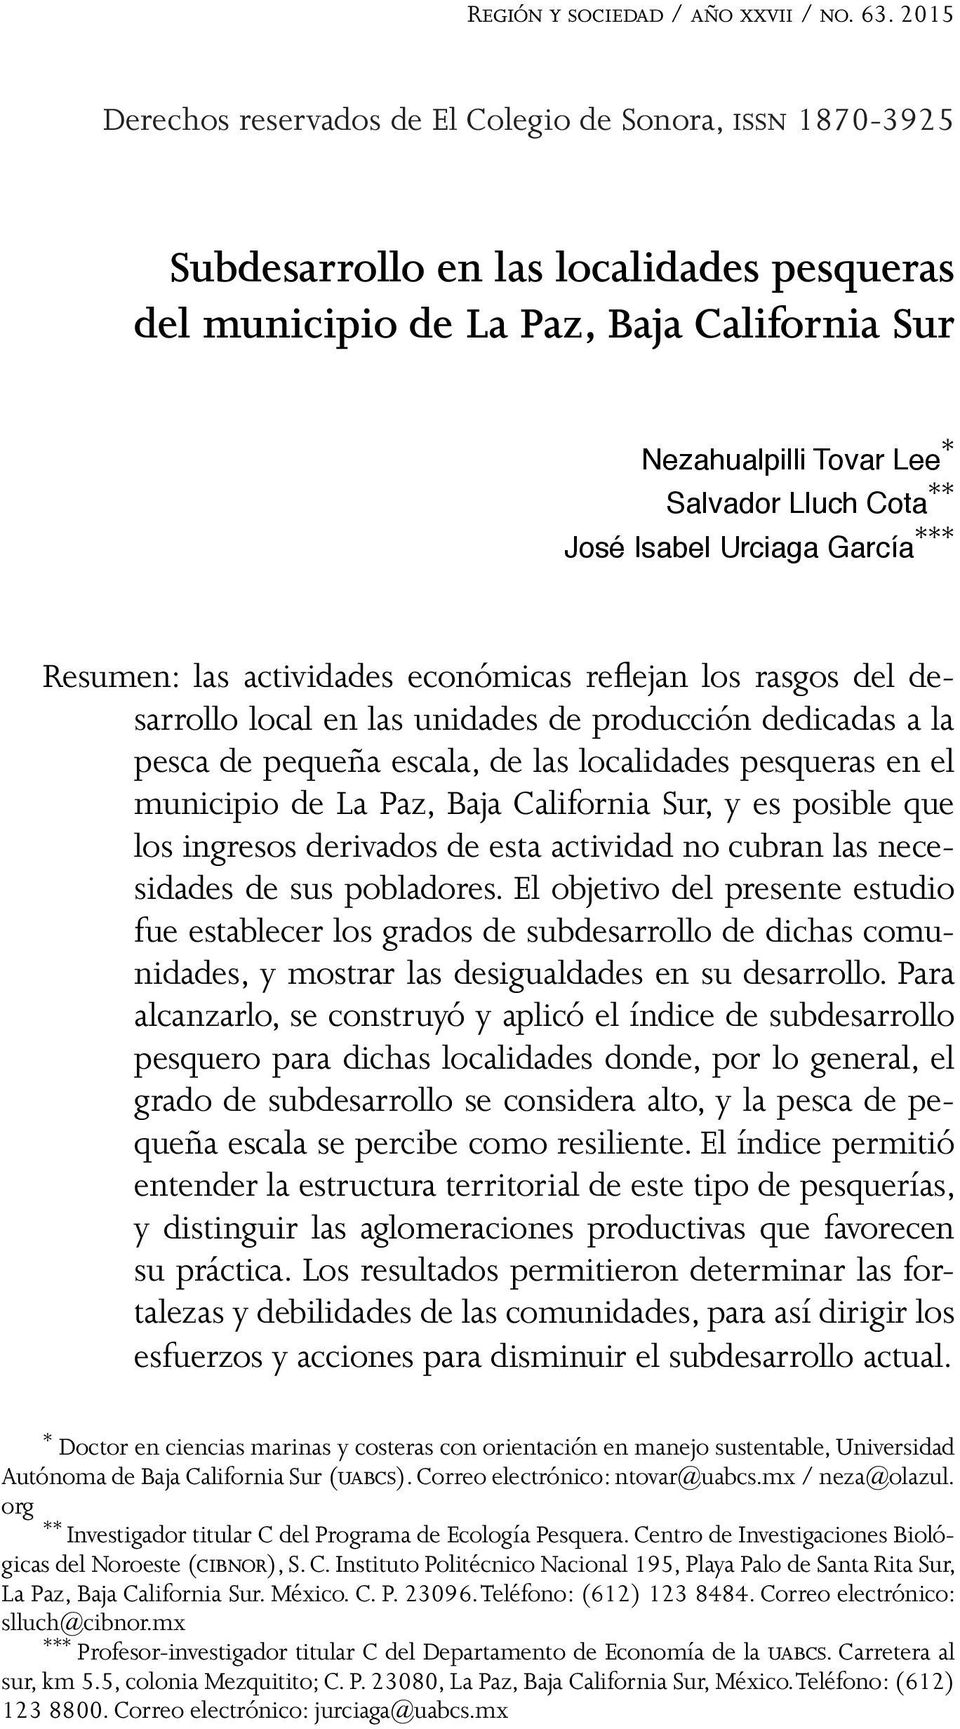 ** José Isabel Urciaga García *** Resumen: las actividades económicas reflejan los rasgos del desarrollo local en las unidades de producción dedicadas a la pesca de pequeña escala, de las localidades